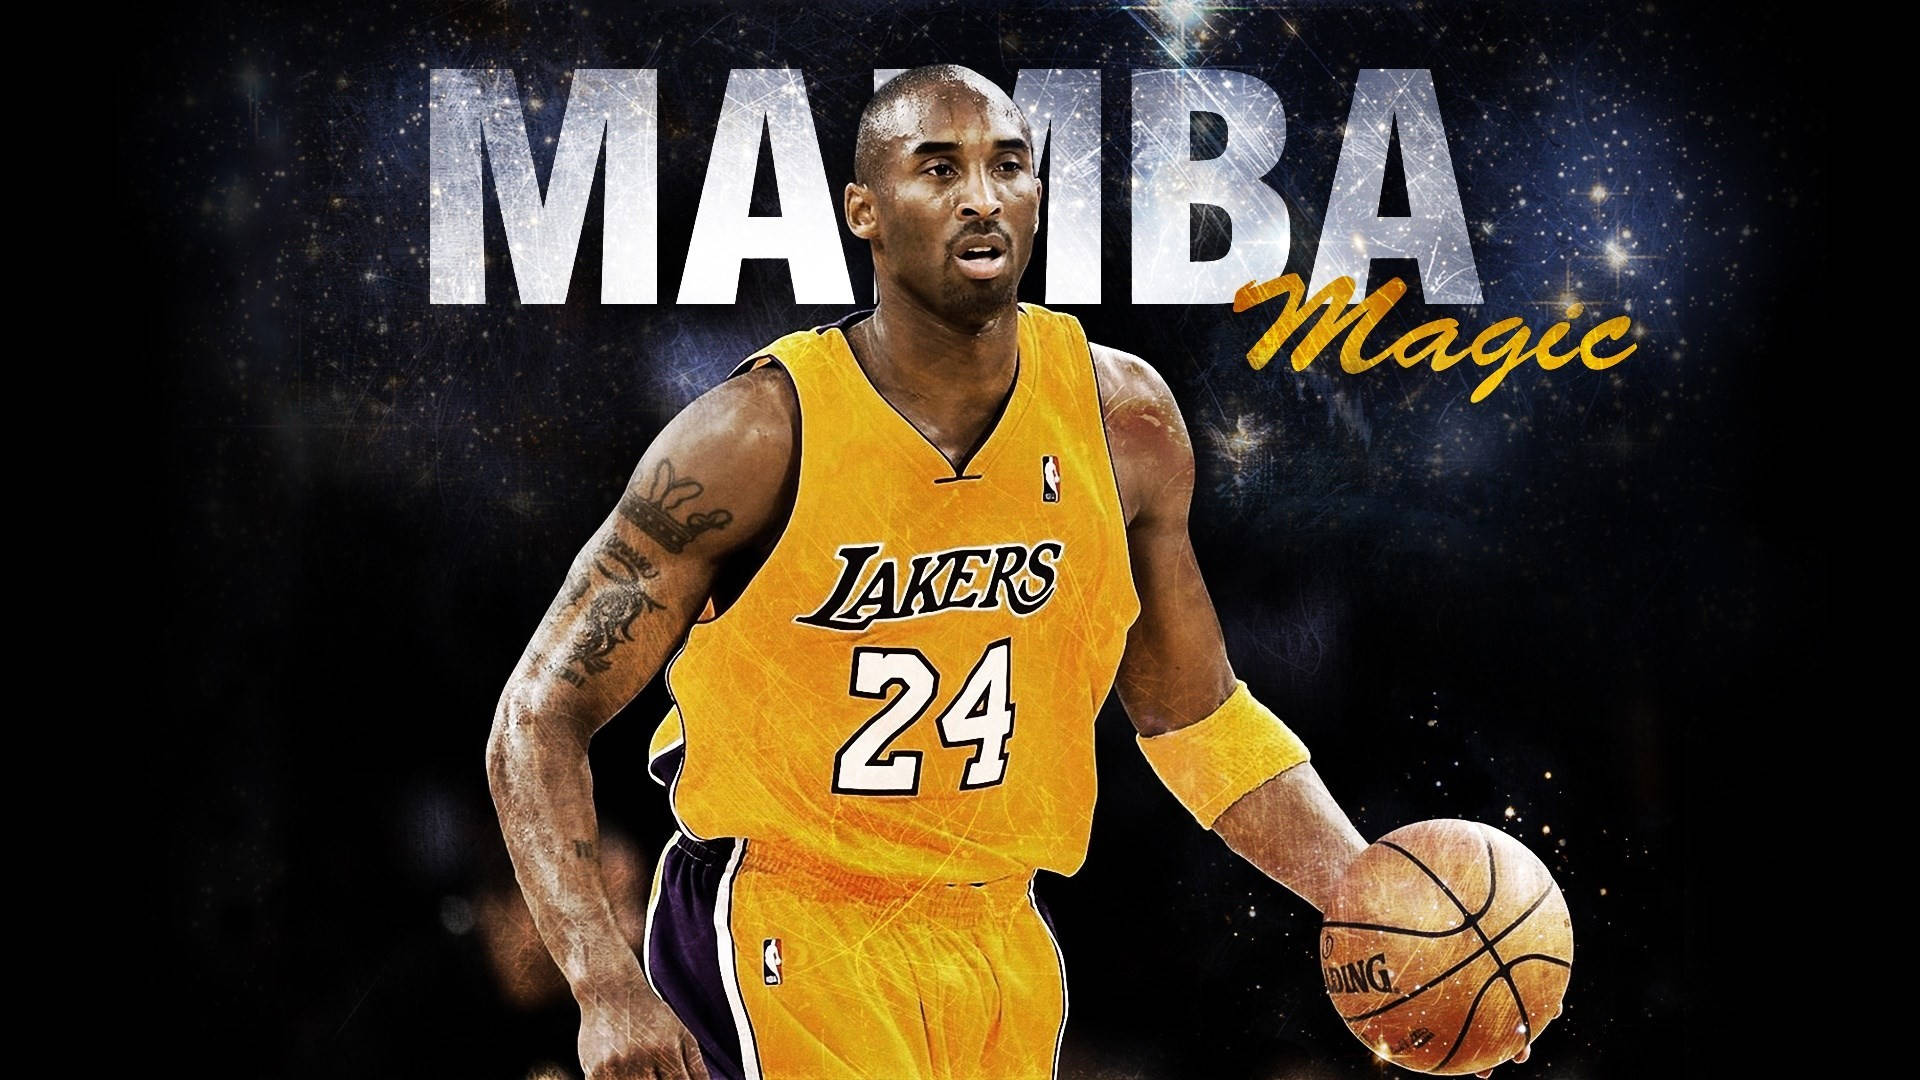 Mamba Magic Lakers Hd